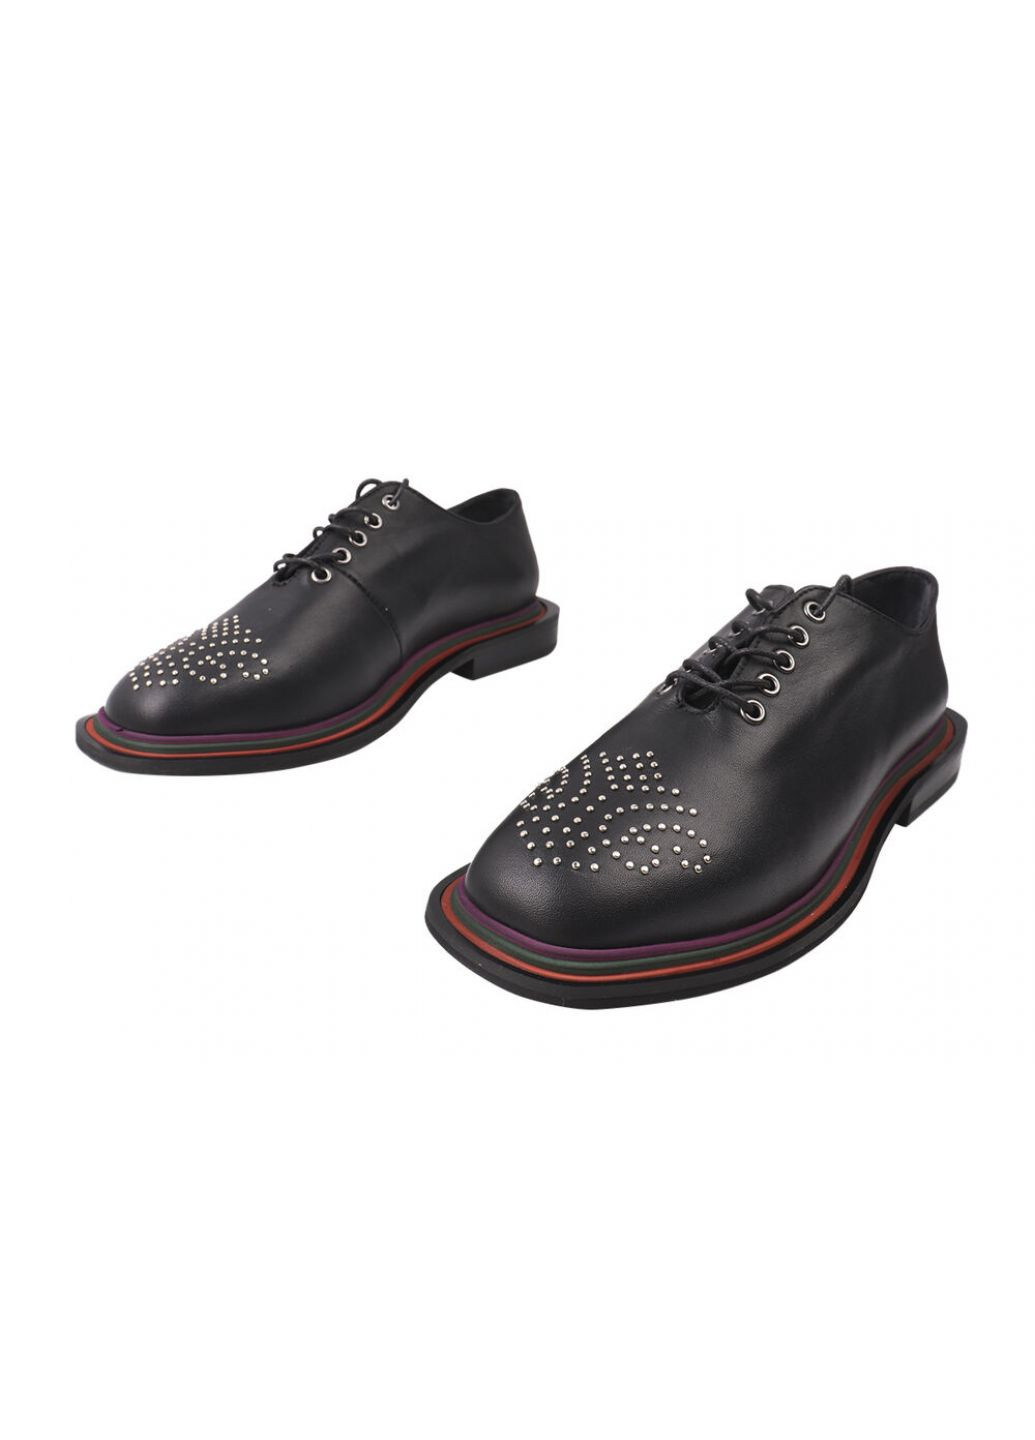 Туфлі на шнурівці жіночі натуральна шкіра, колір чорний Sattini 162-20dtc (257426370)